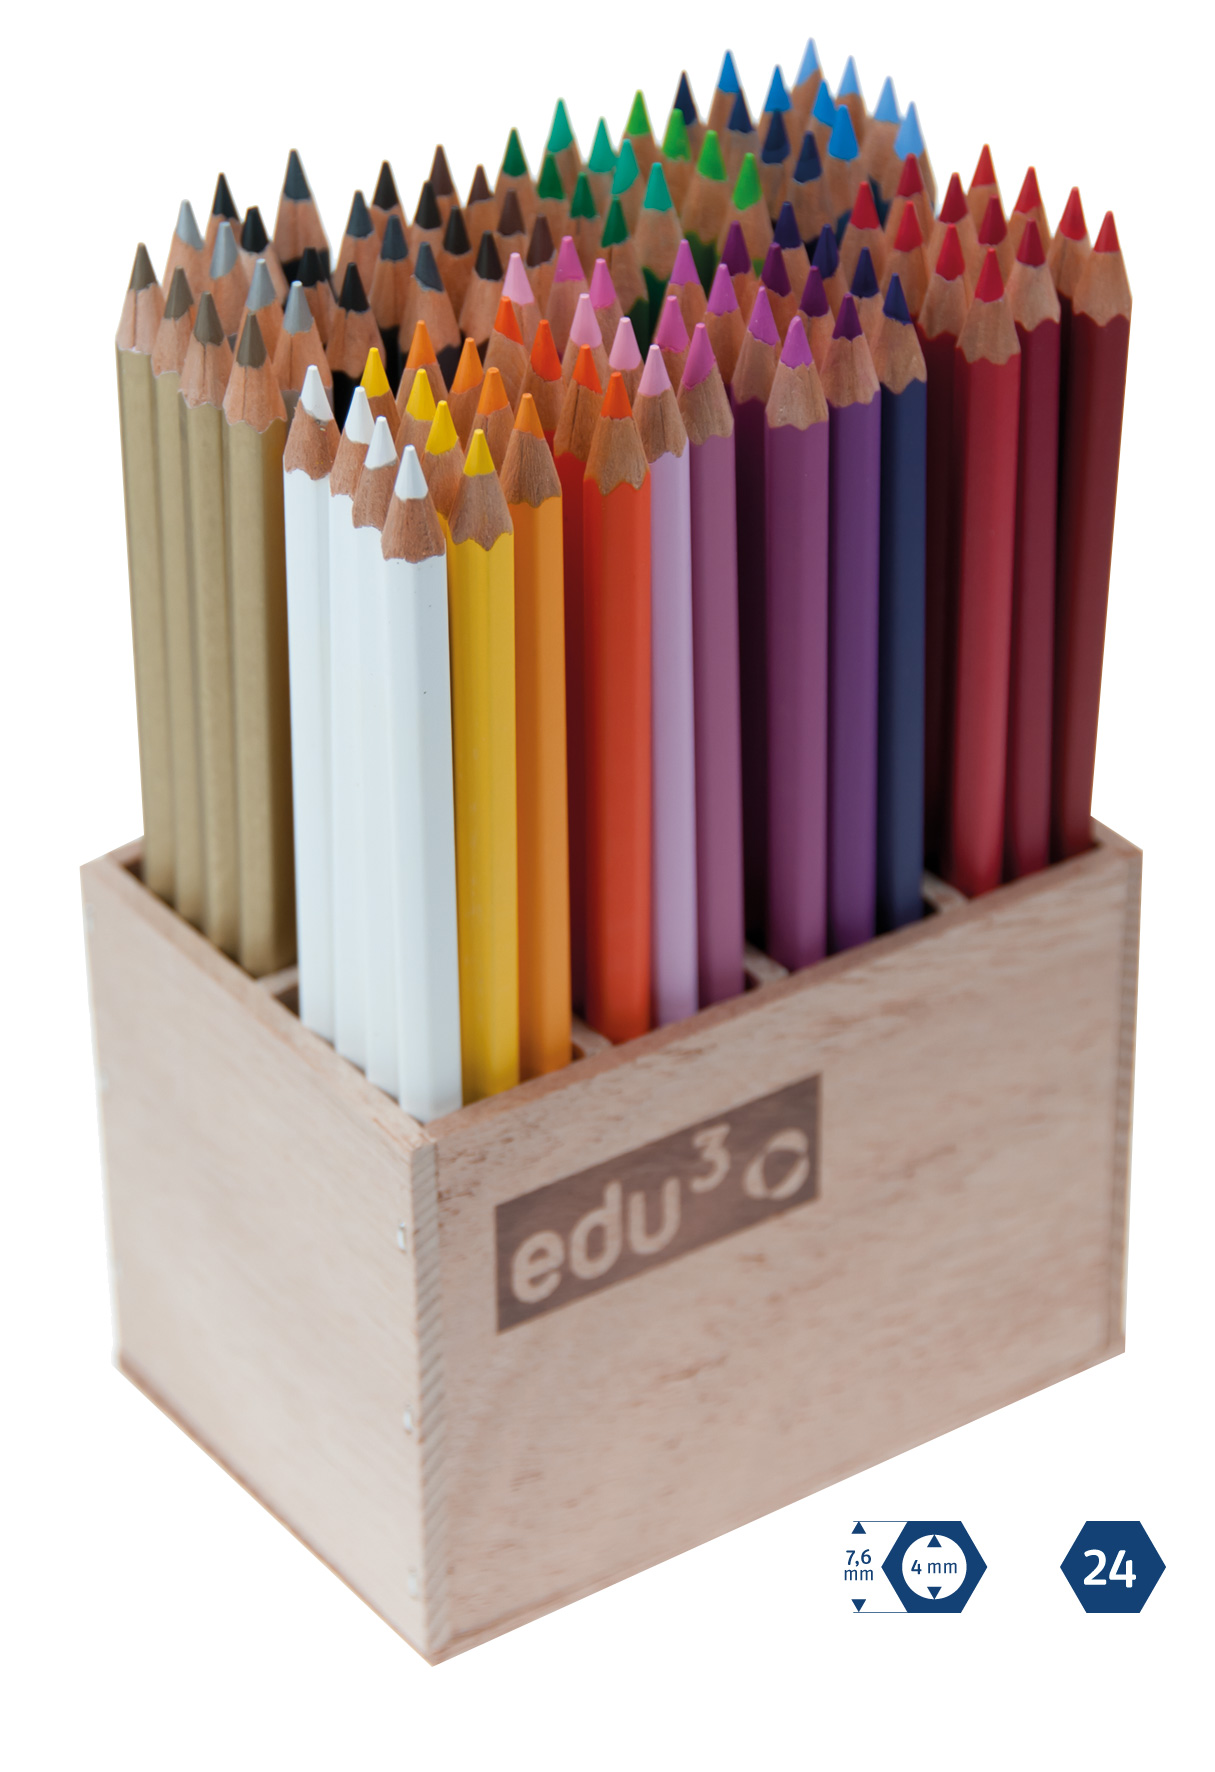 288 Stk Buntstifte Malstifte Colour pencils Bunt-Stifte Zeichenstifte 12 Farben 